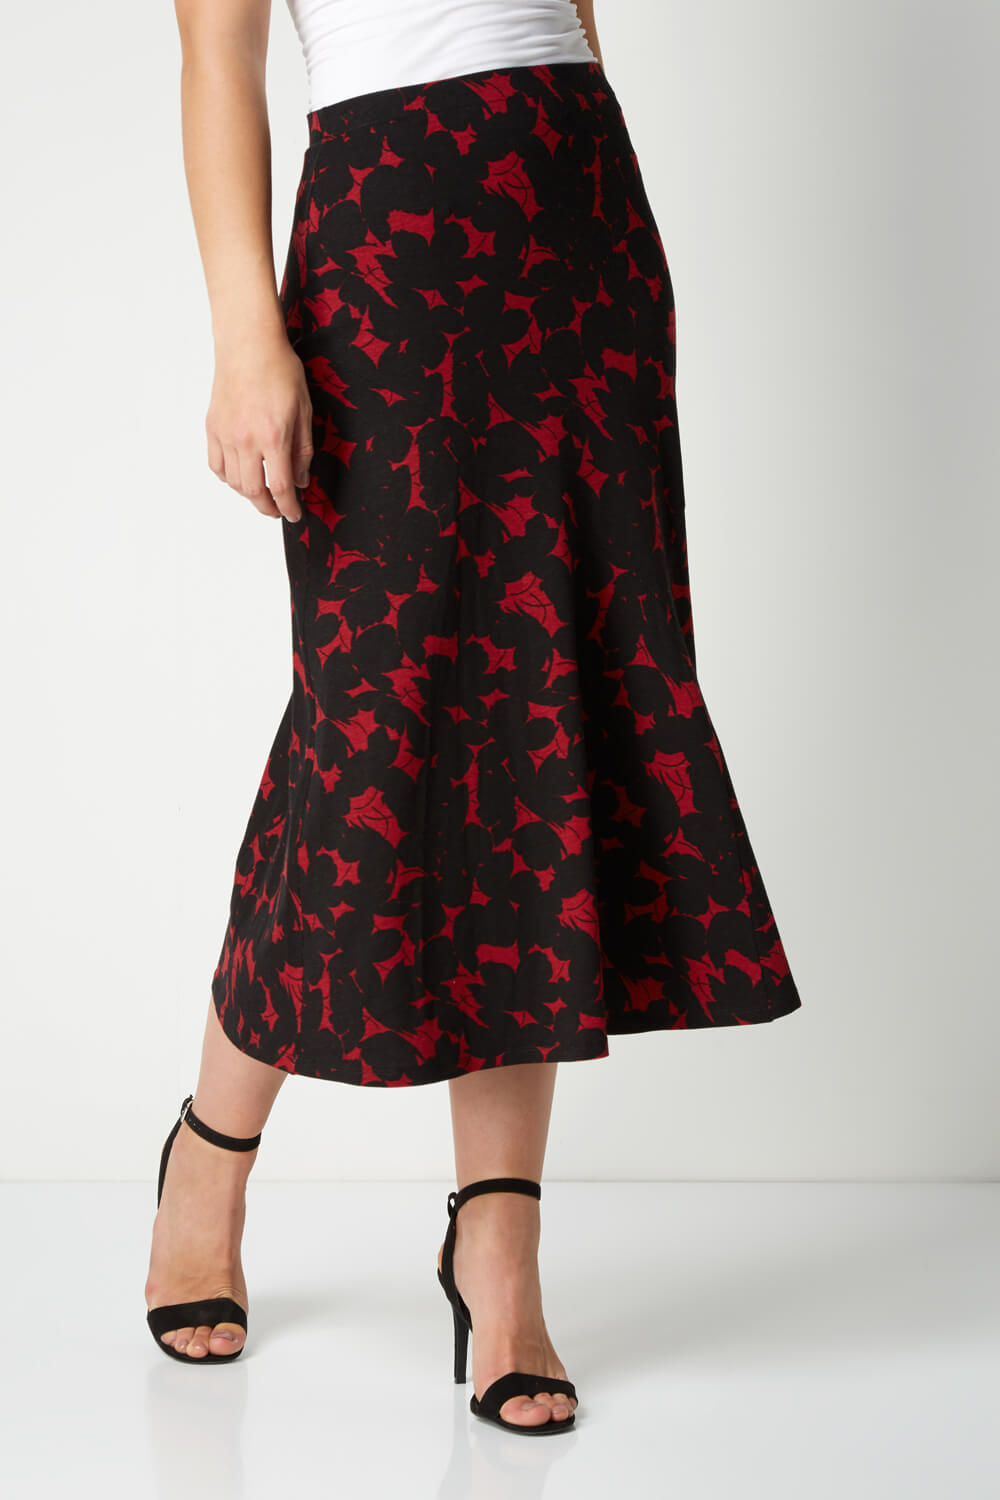 Floral Print Midi Skirt in Red - Roman Originals UK